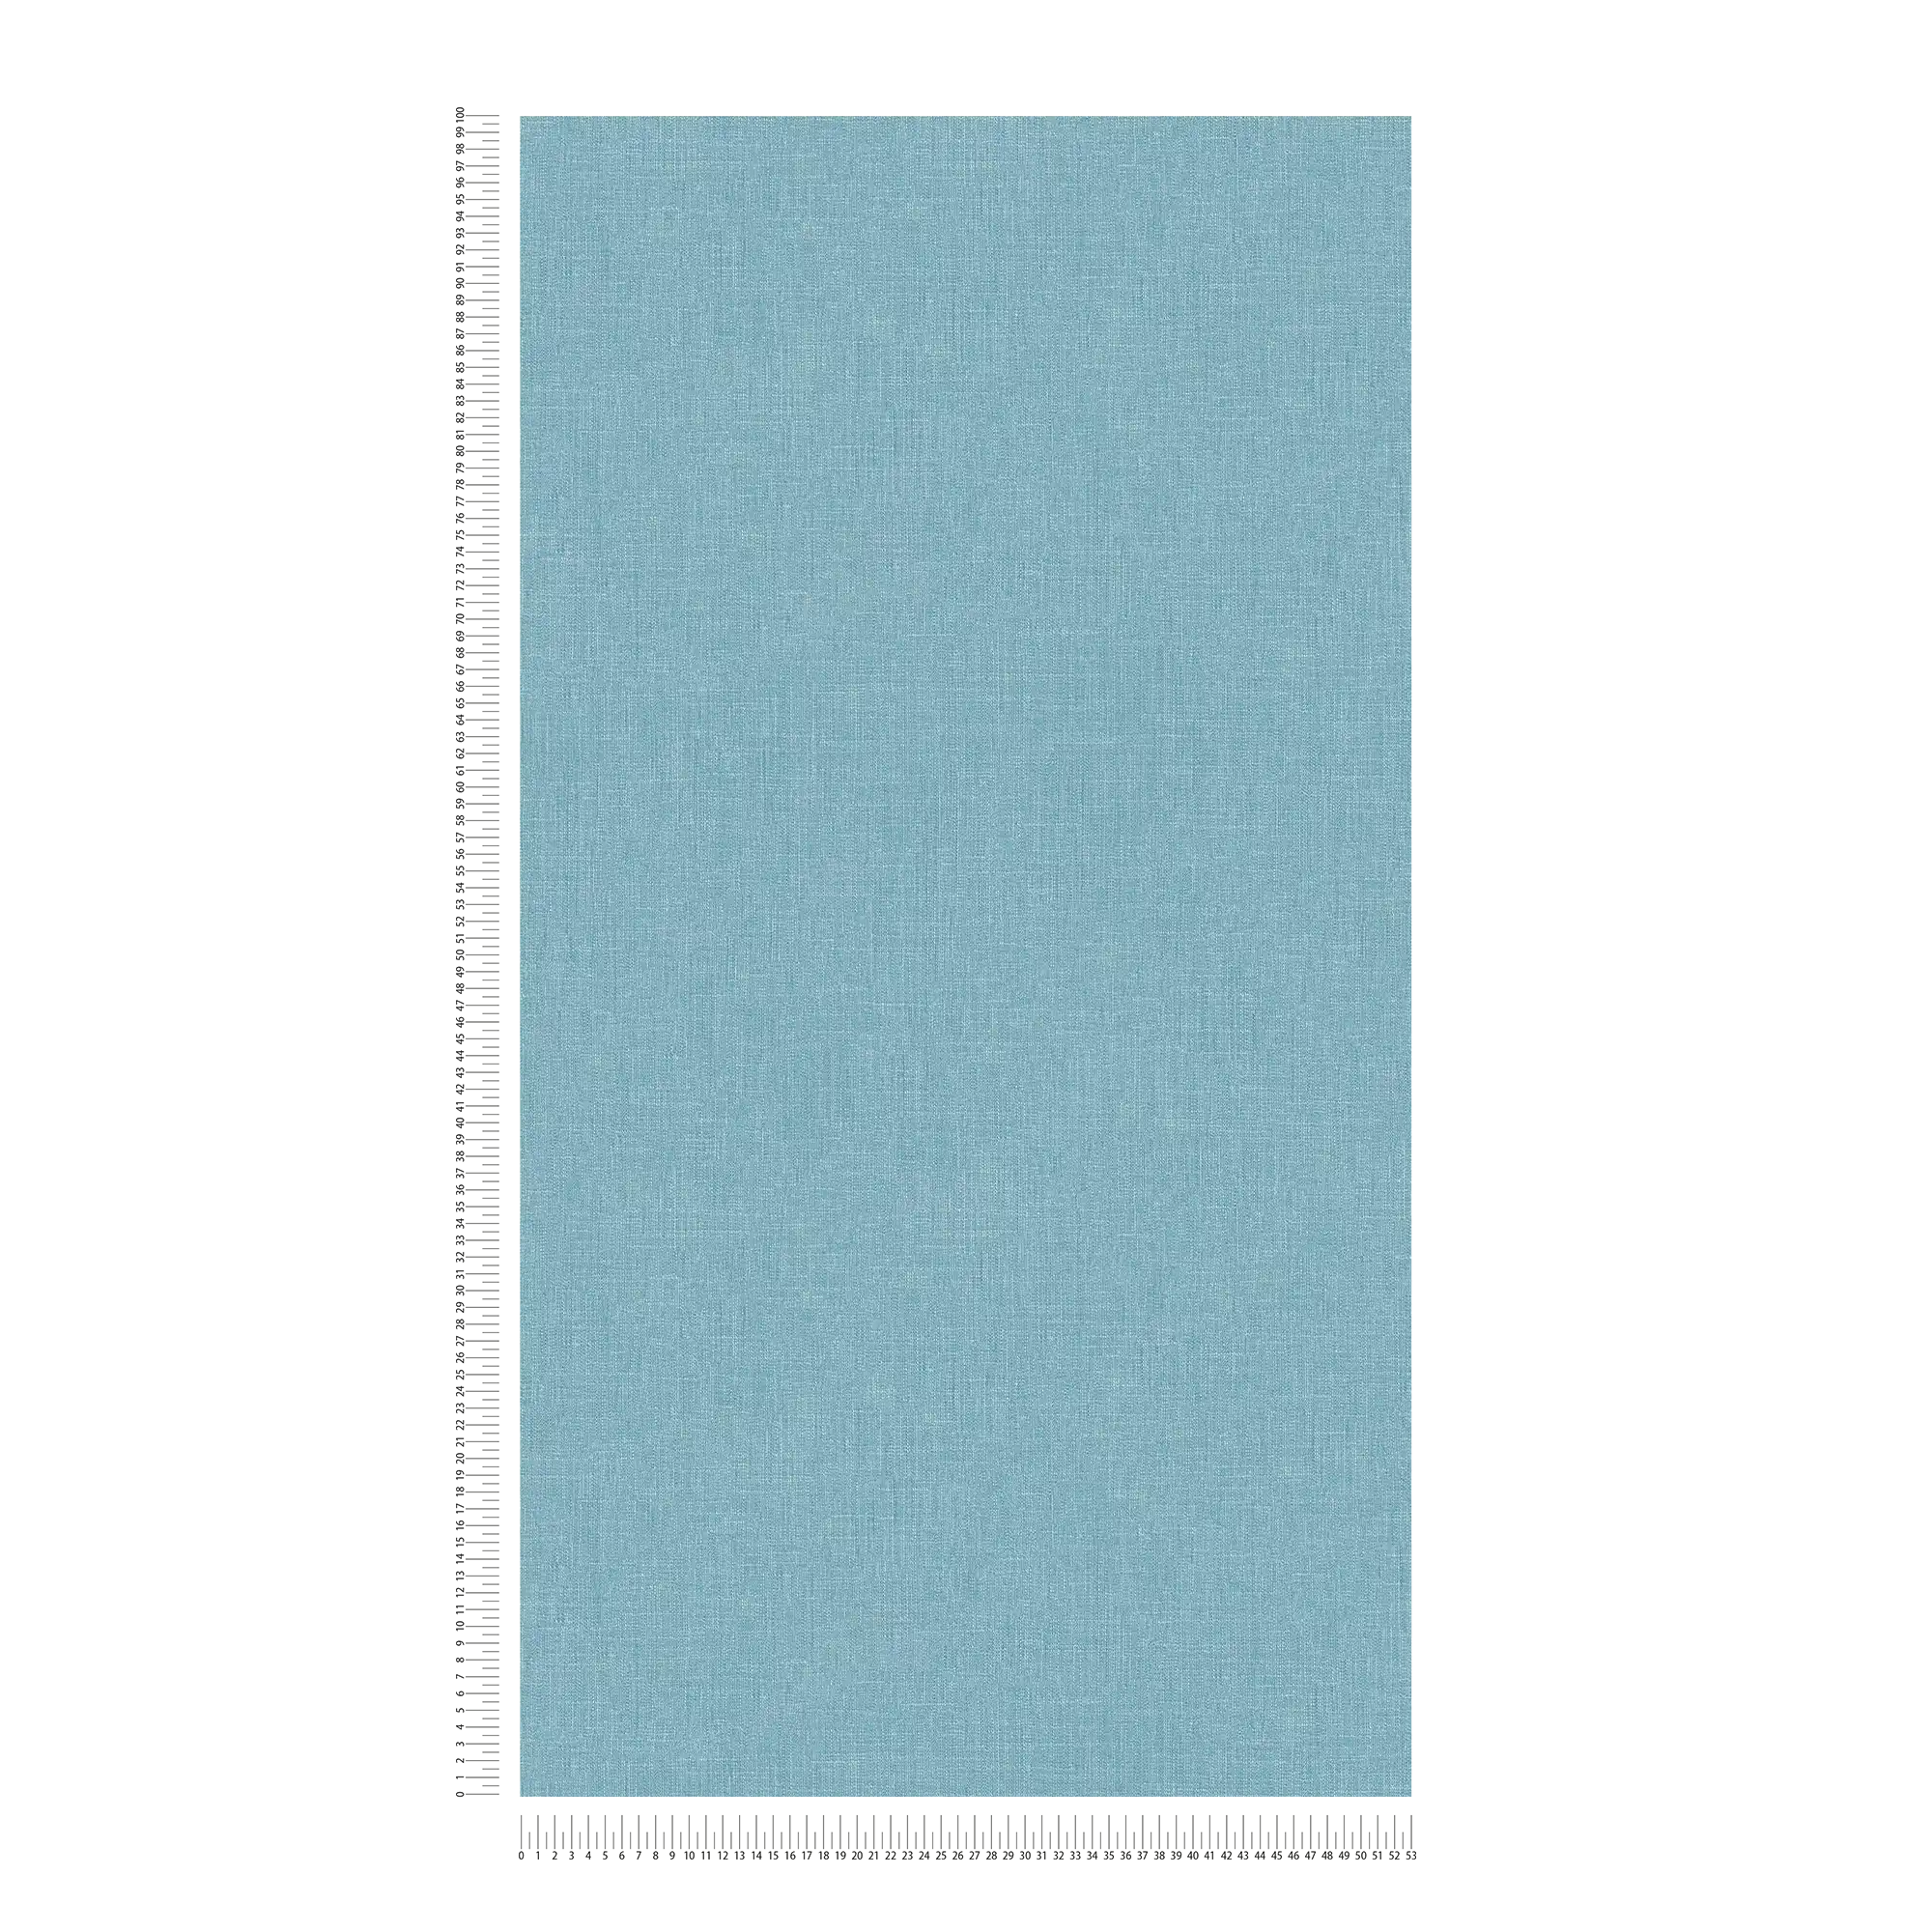             Carta da parati in tessuto non tessuto blu screziato con struttura tessile in stile bouclé
        